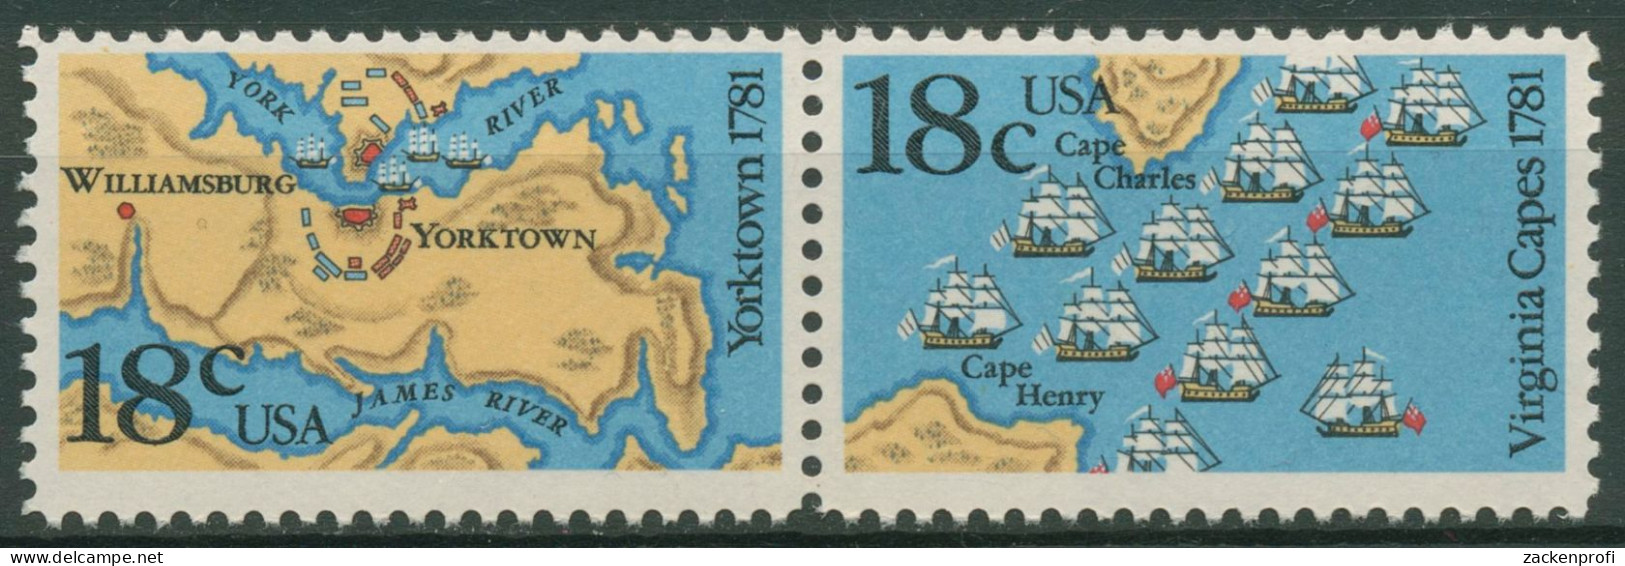 USA 1981 Seeschlacht Chesapeake Bay & Yorktown 1511/12 ZD Postfrisch - Unused Stamps